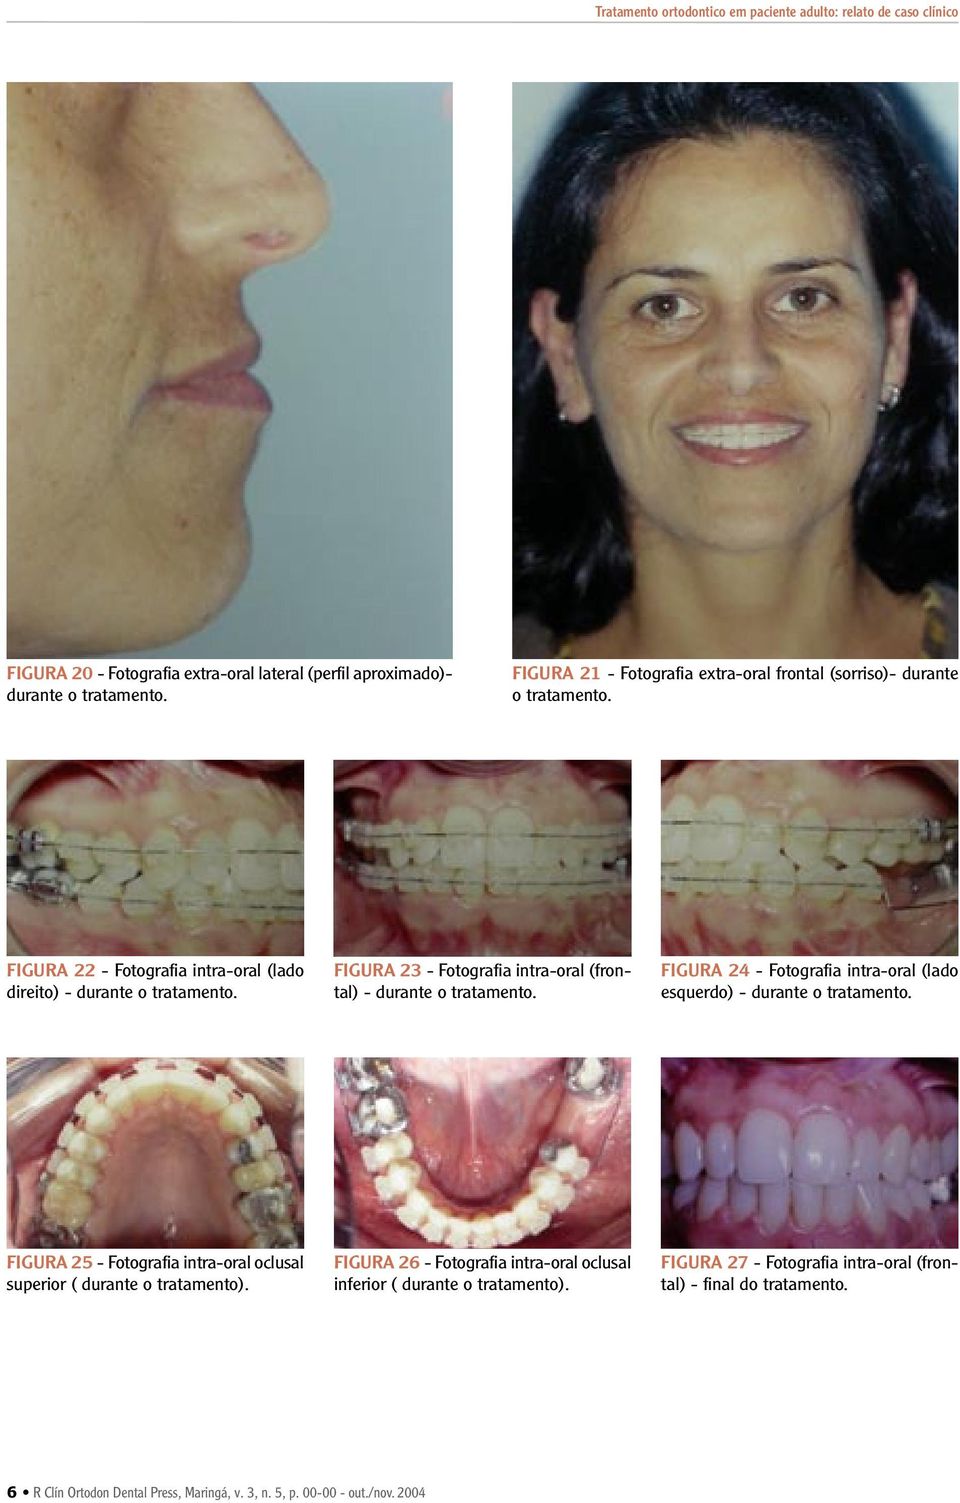 FIGURA 23 - Fotografia intra-oral (frontal) - durante o tratamento. FIGURA 24 - Fotografia intra-oral (lado esquerdo) - durante o tratamento.